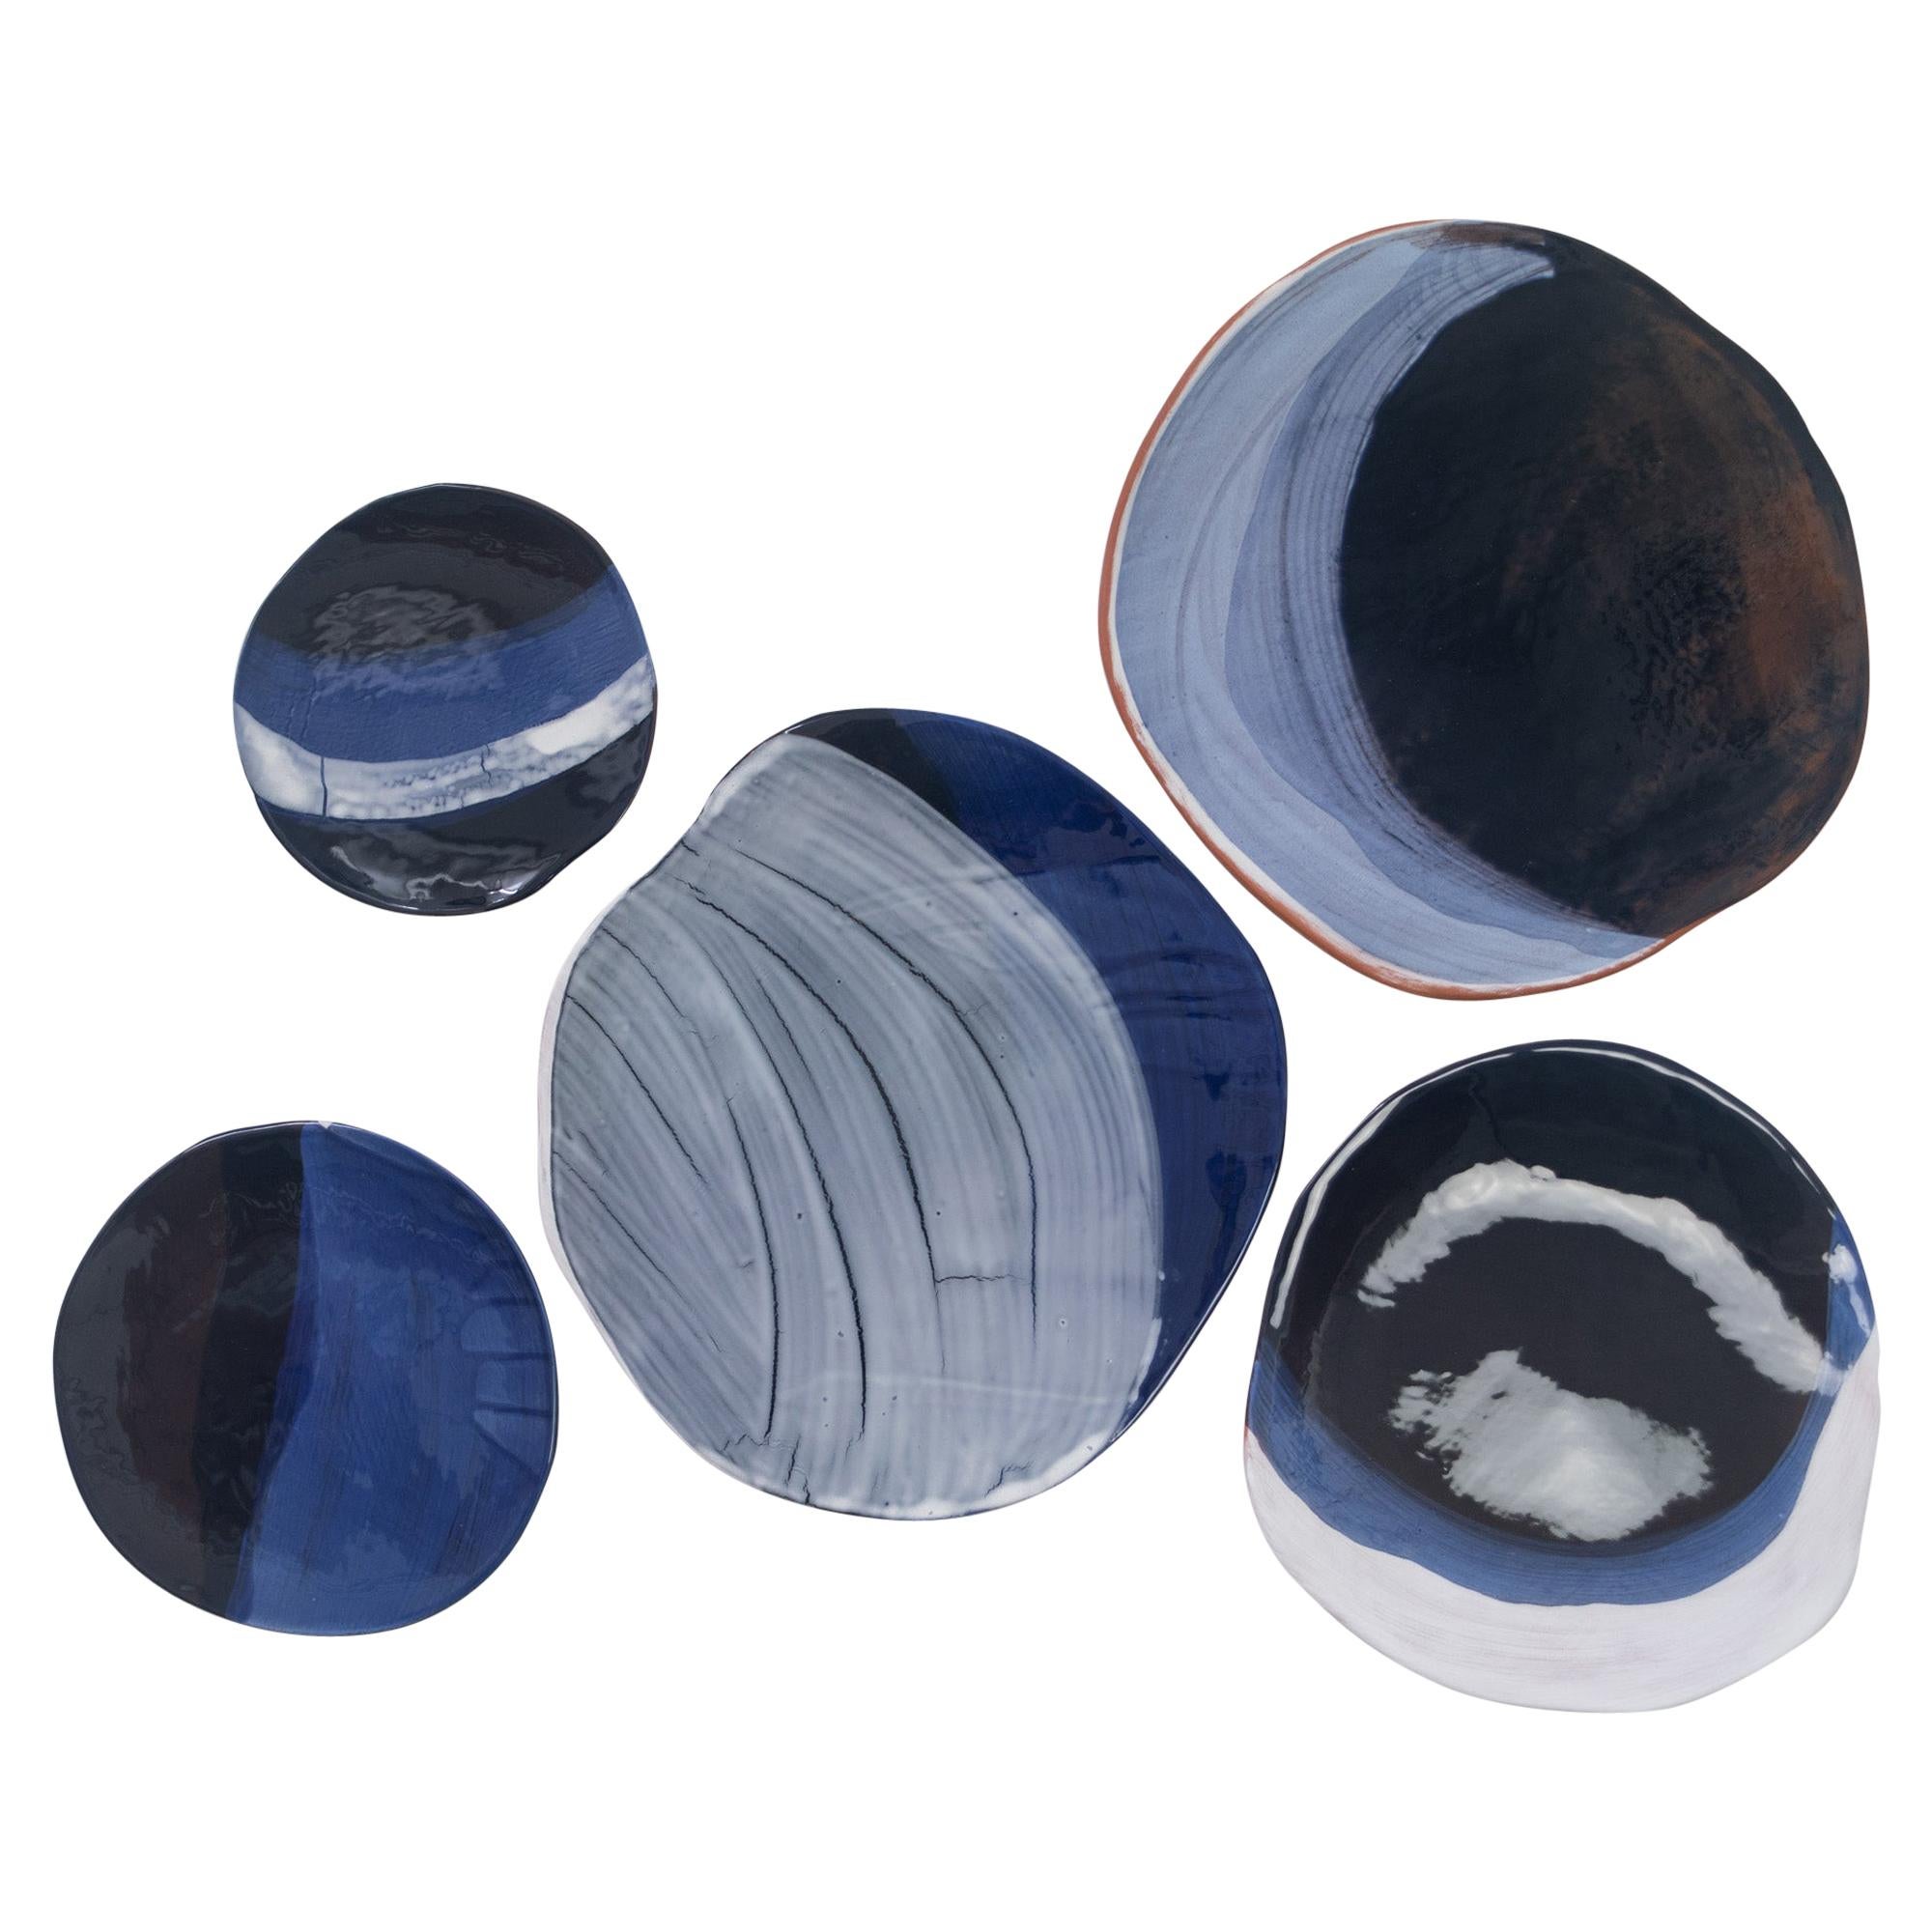 Einzigartige Wandkunst: eine Serie von 5 Keramiken, die die Phasen des Mondes darstellen
Die Stücke können auch auf einem großen Tisch angeordnet werden.

Die Durchmesser sind: 8.5